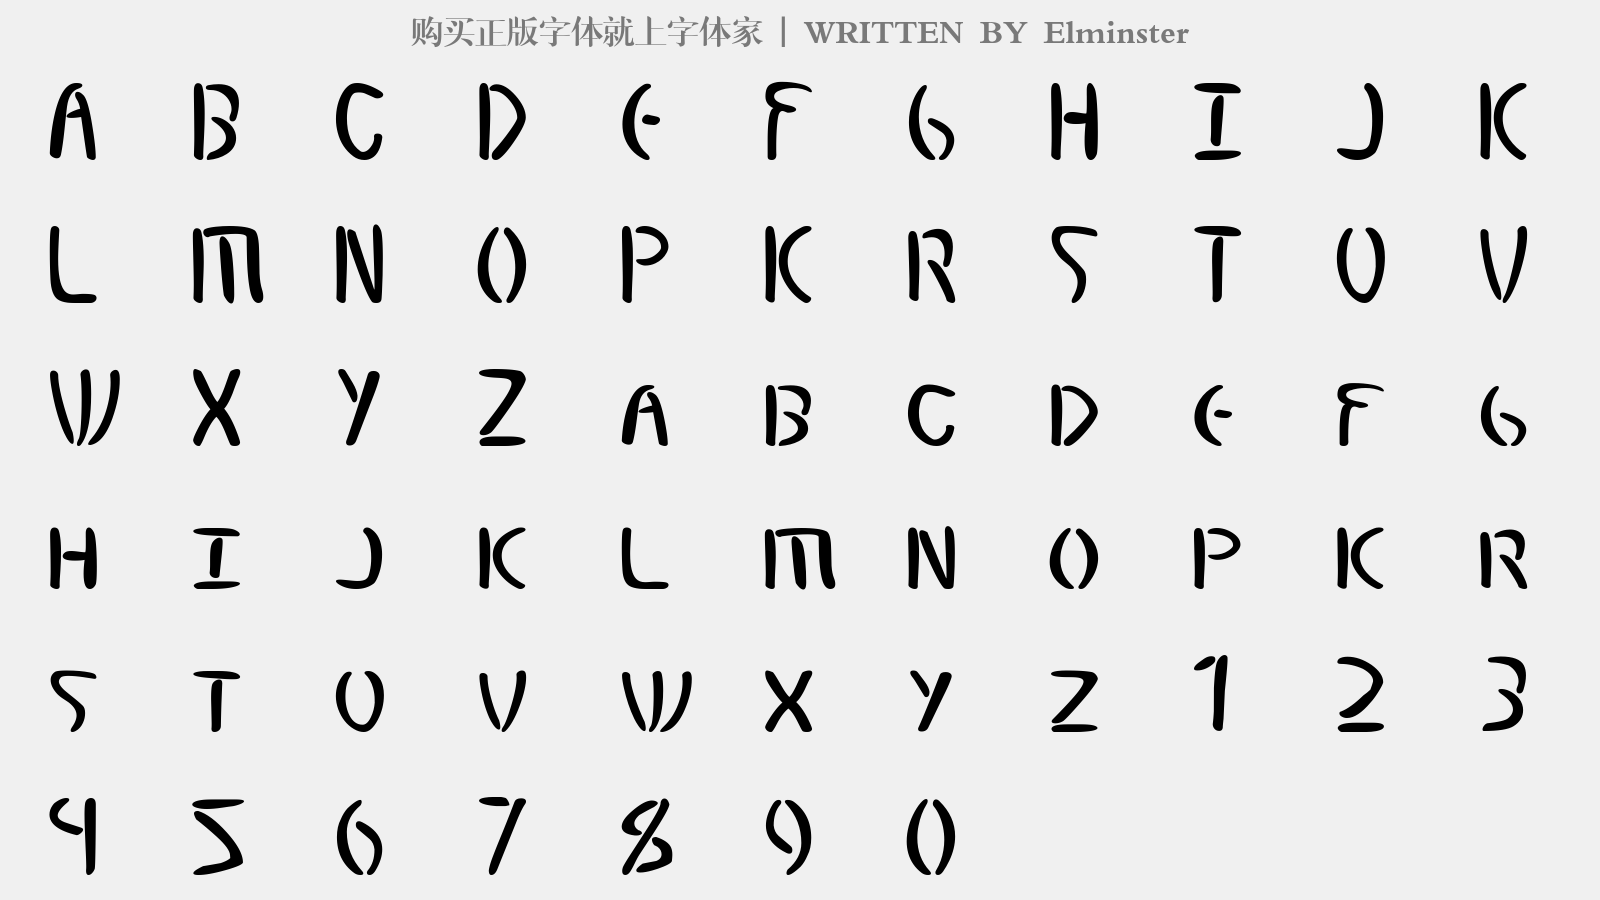 Elminster - 大写字母/小写字母/数字